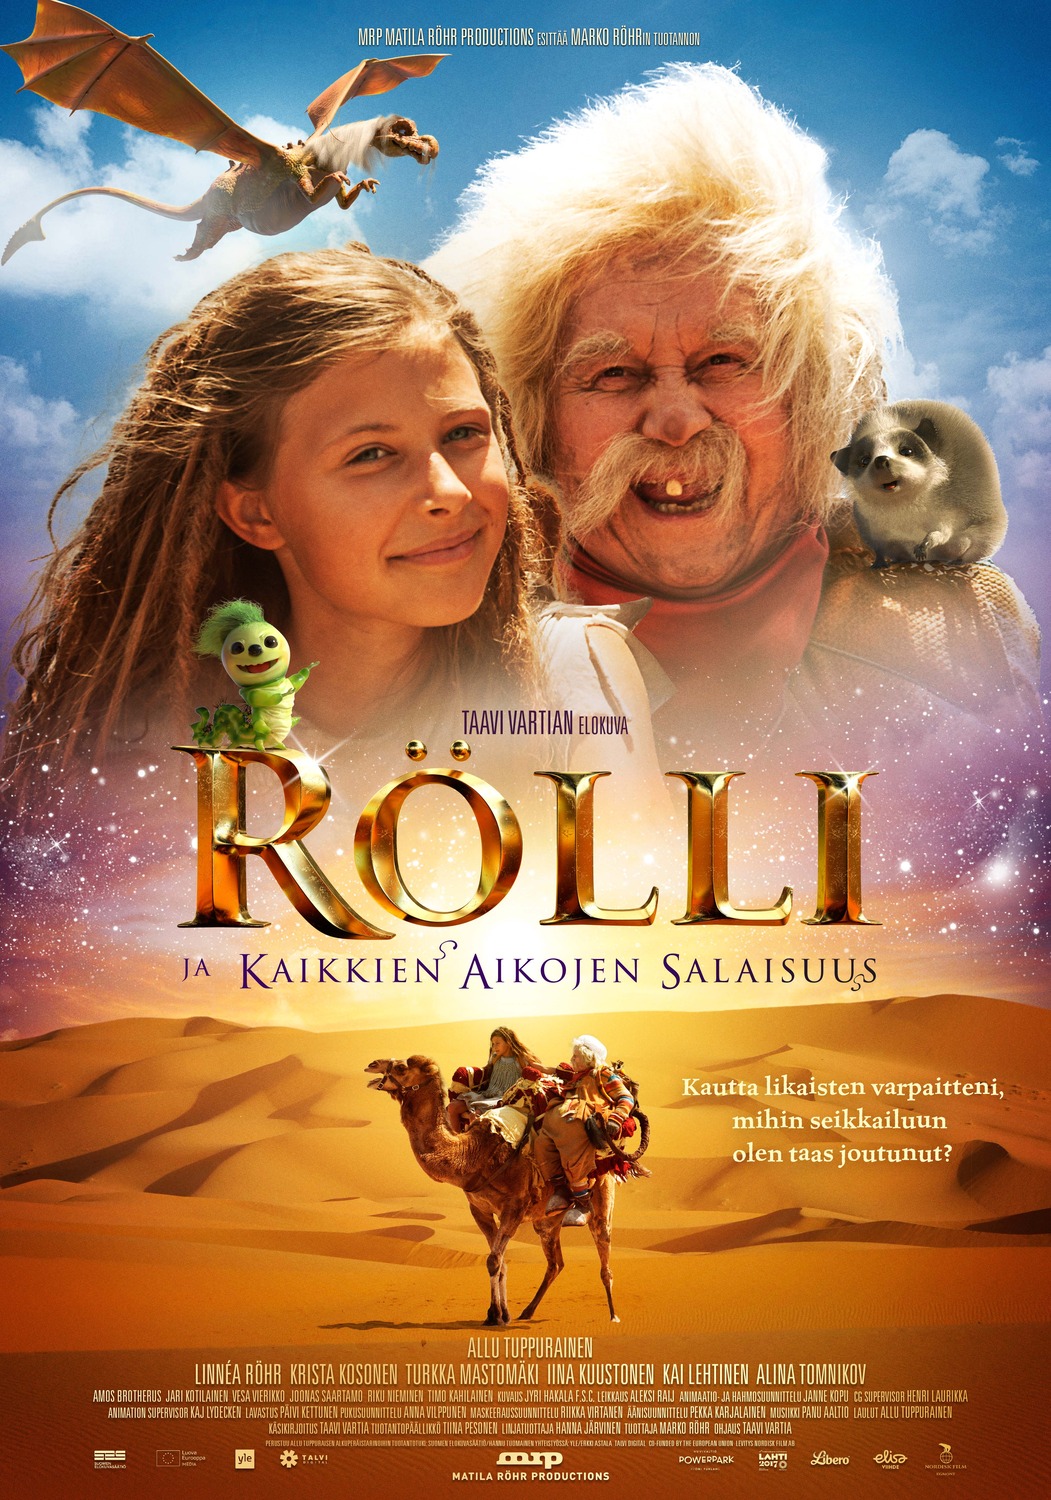 Extra Large Movie Poster Image for Rölli ja kaikkien aikojen salaisuus 